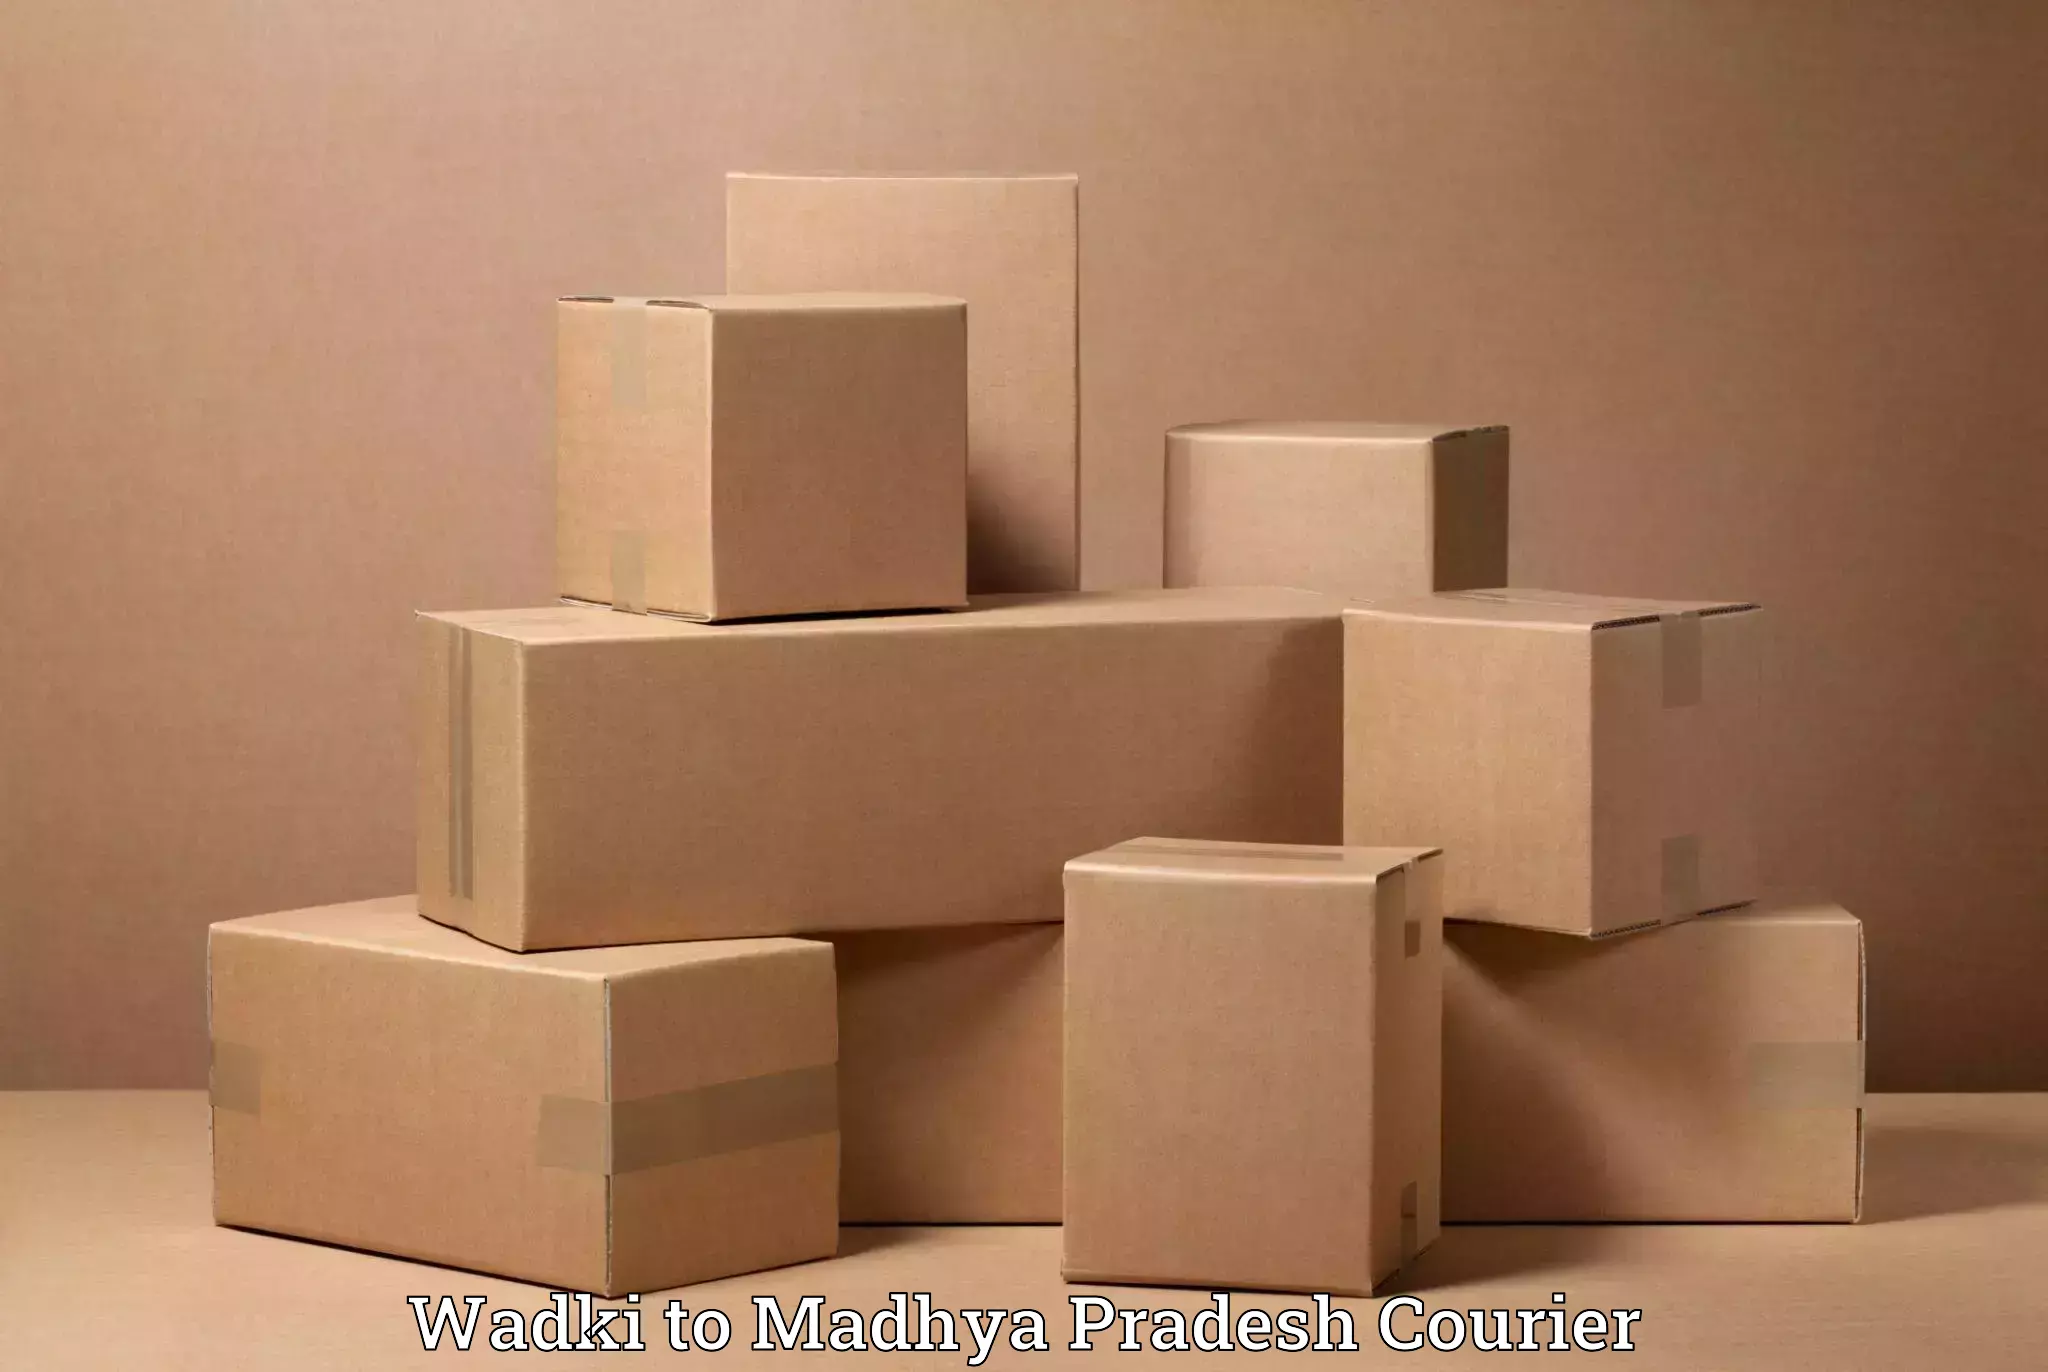 Furniture moving experts Wadki to Raipur Karchuliyan